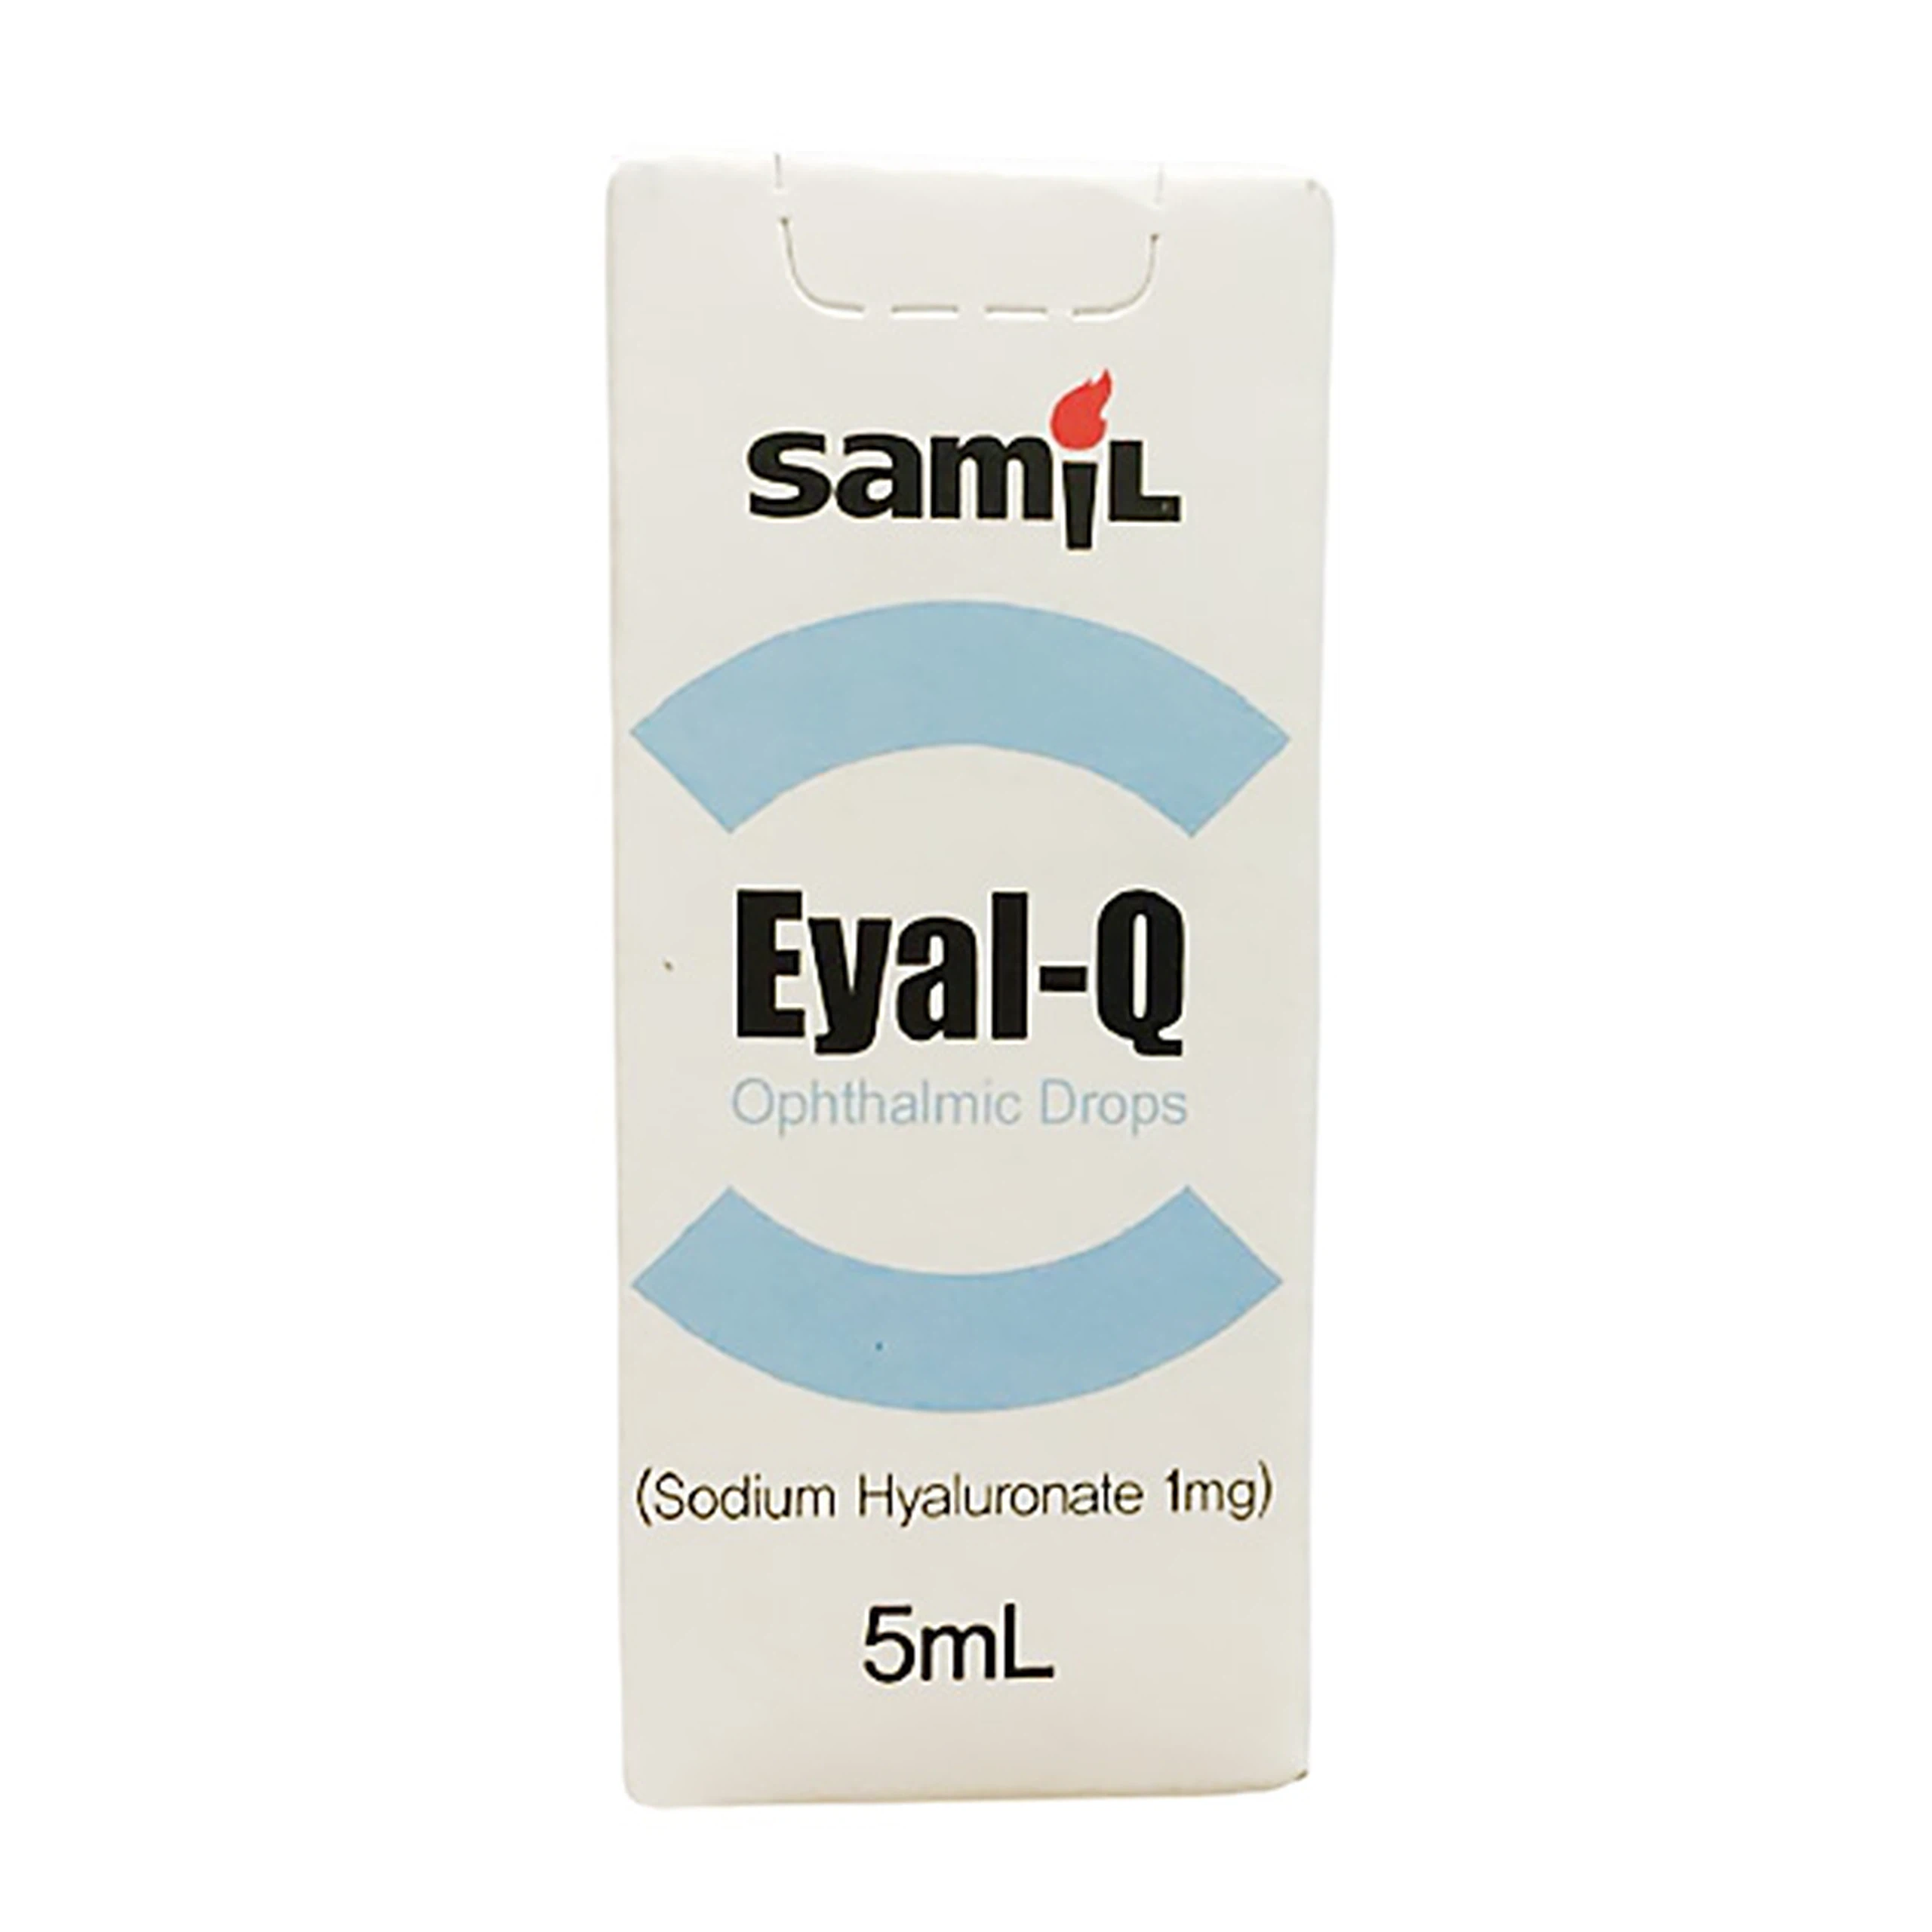 Thuốc nhỏ mắt Eyal-Q Samil giảm khô mắt, làm ẩm cho mắt (5ml)